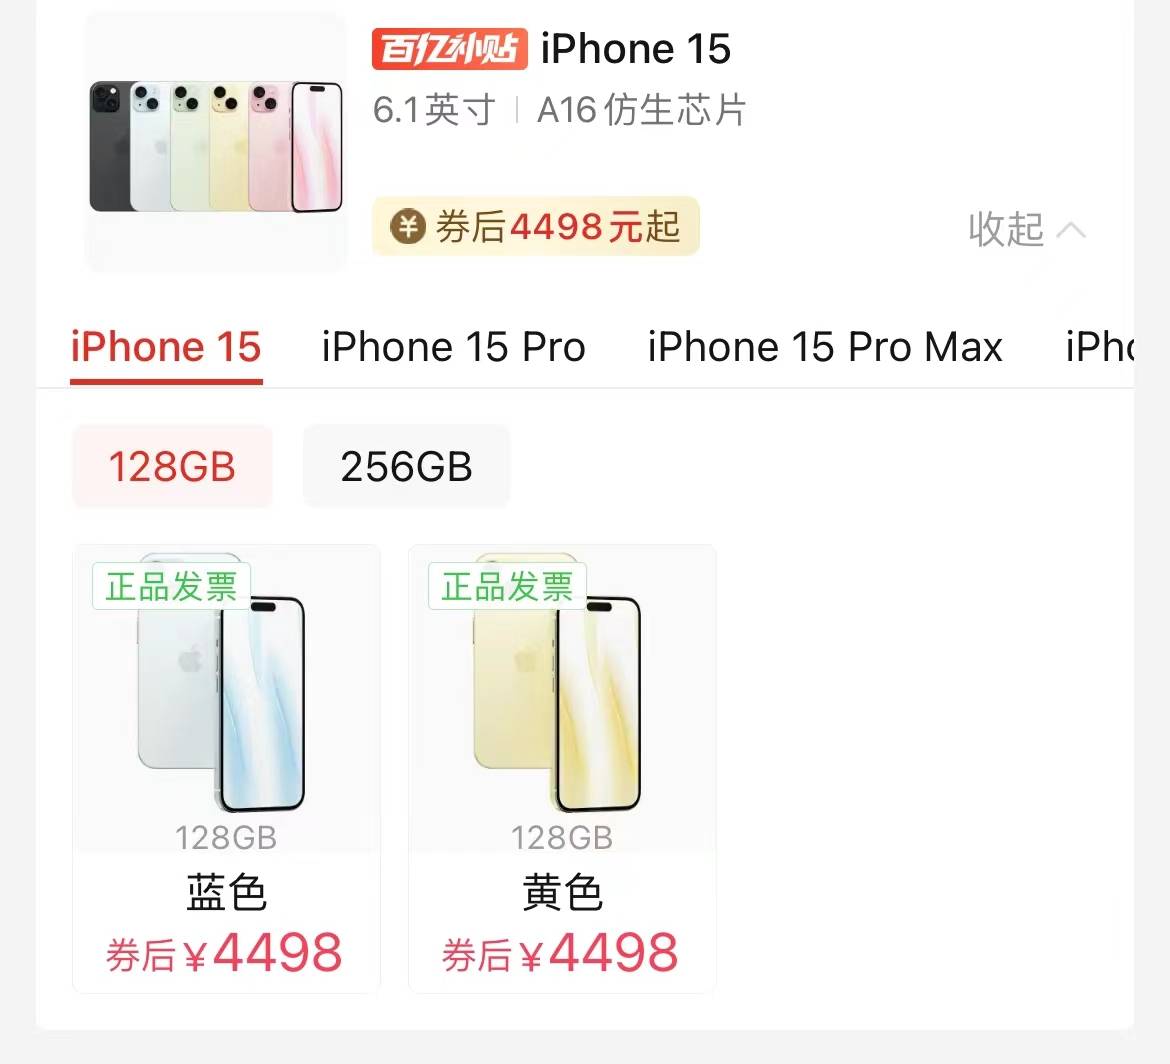 苹果官方直营渠道加入“价格战”，iPhone 15系列机型最高可降2050元